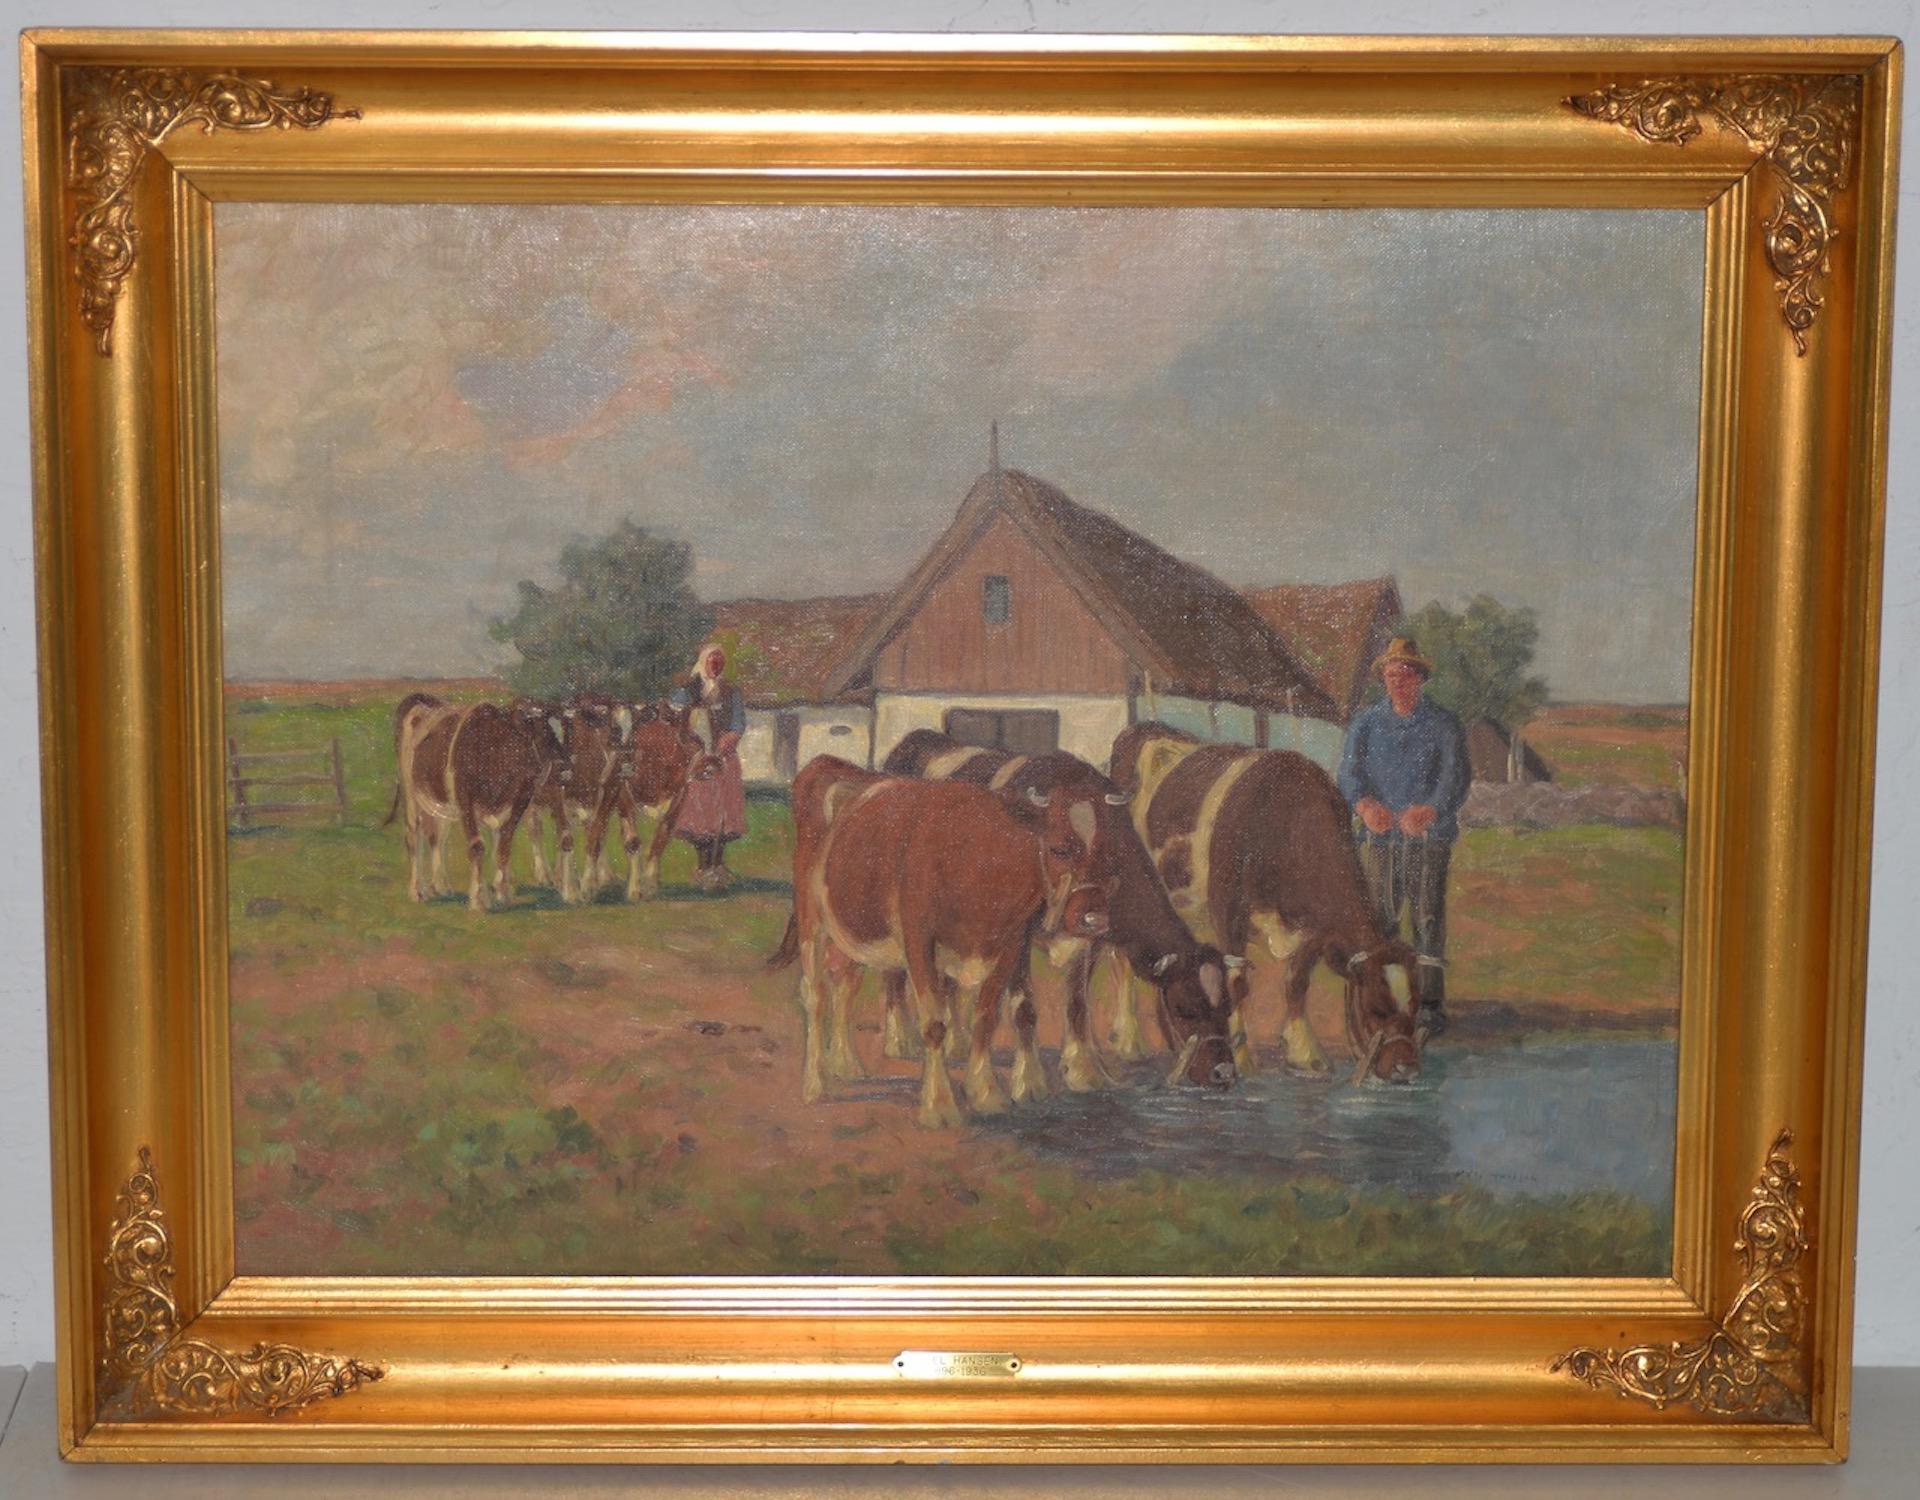 Axel Hansen (Américain, 1896-1936) Paysage de ferme champêtre avec bétail, vers 1920

Belle peinture à l'huile impressionniste du peintre danois Axel Hansen.

Le tableau représente un jeune couple dans la ferme familiale. Leur maison est un cottage